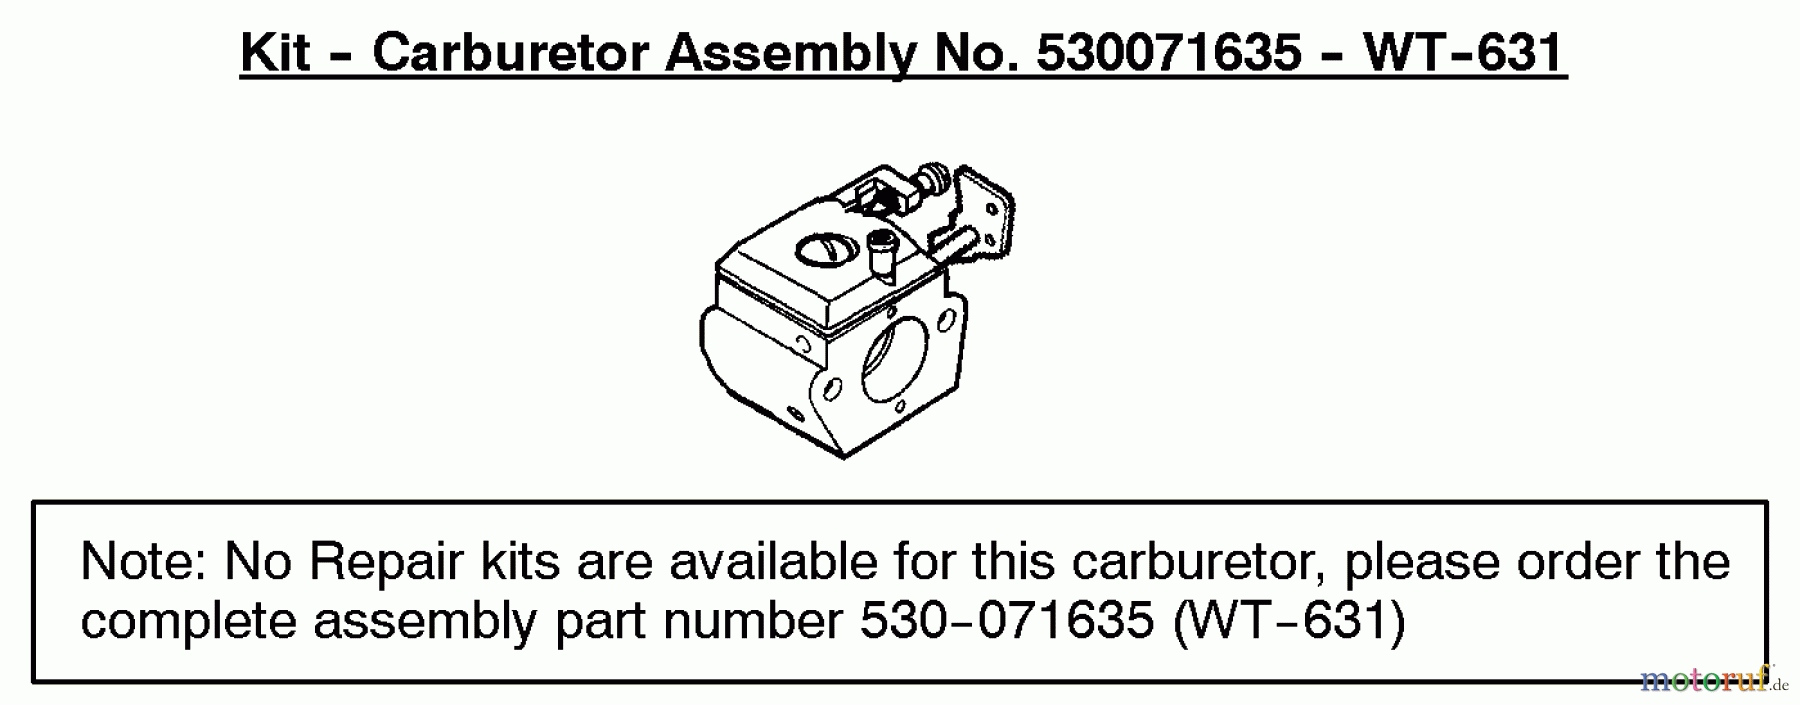  Poulan / Weed Eater Motorsensen, Trimmer PL500 (Type 4) - Weed Eater String Trimmer Carburetor Assembly (WT631) P/N 530071635